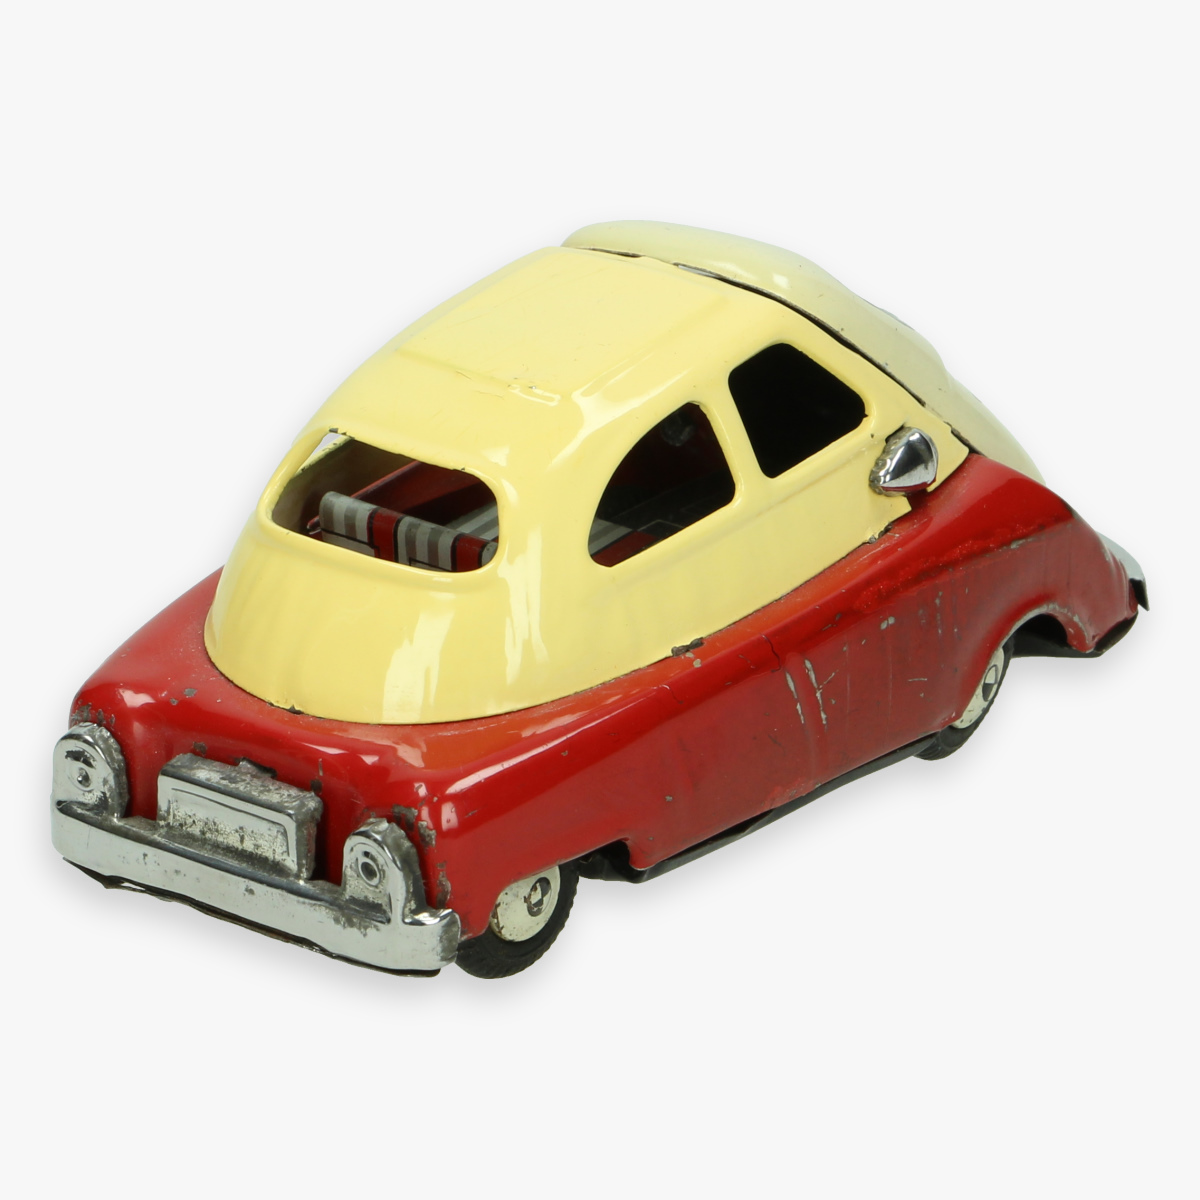 Afbeeldingen van bmw isetta made in japan ''cragstan'' tin toy friction car jaren 50